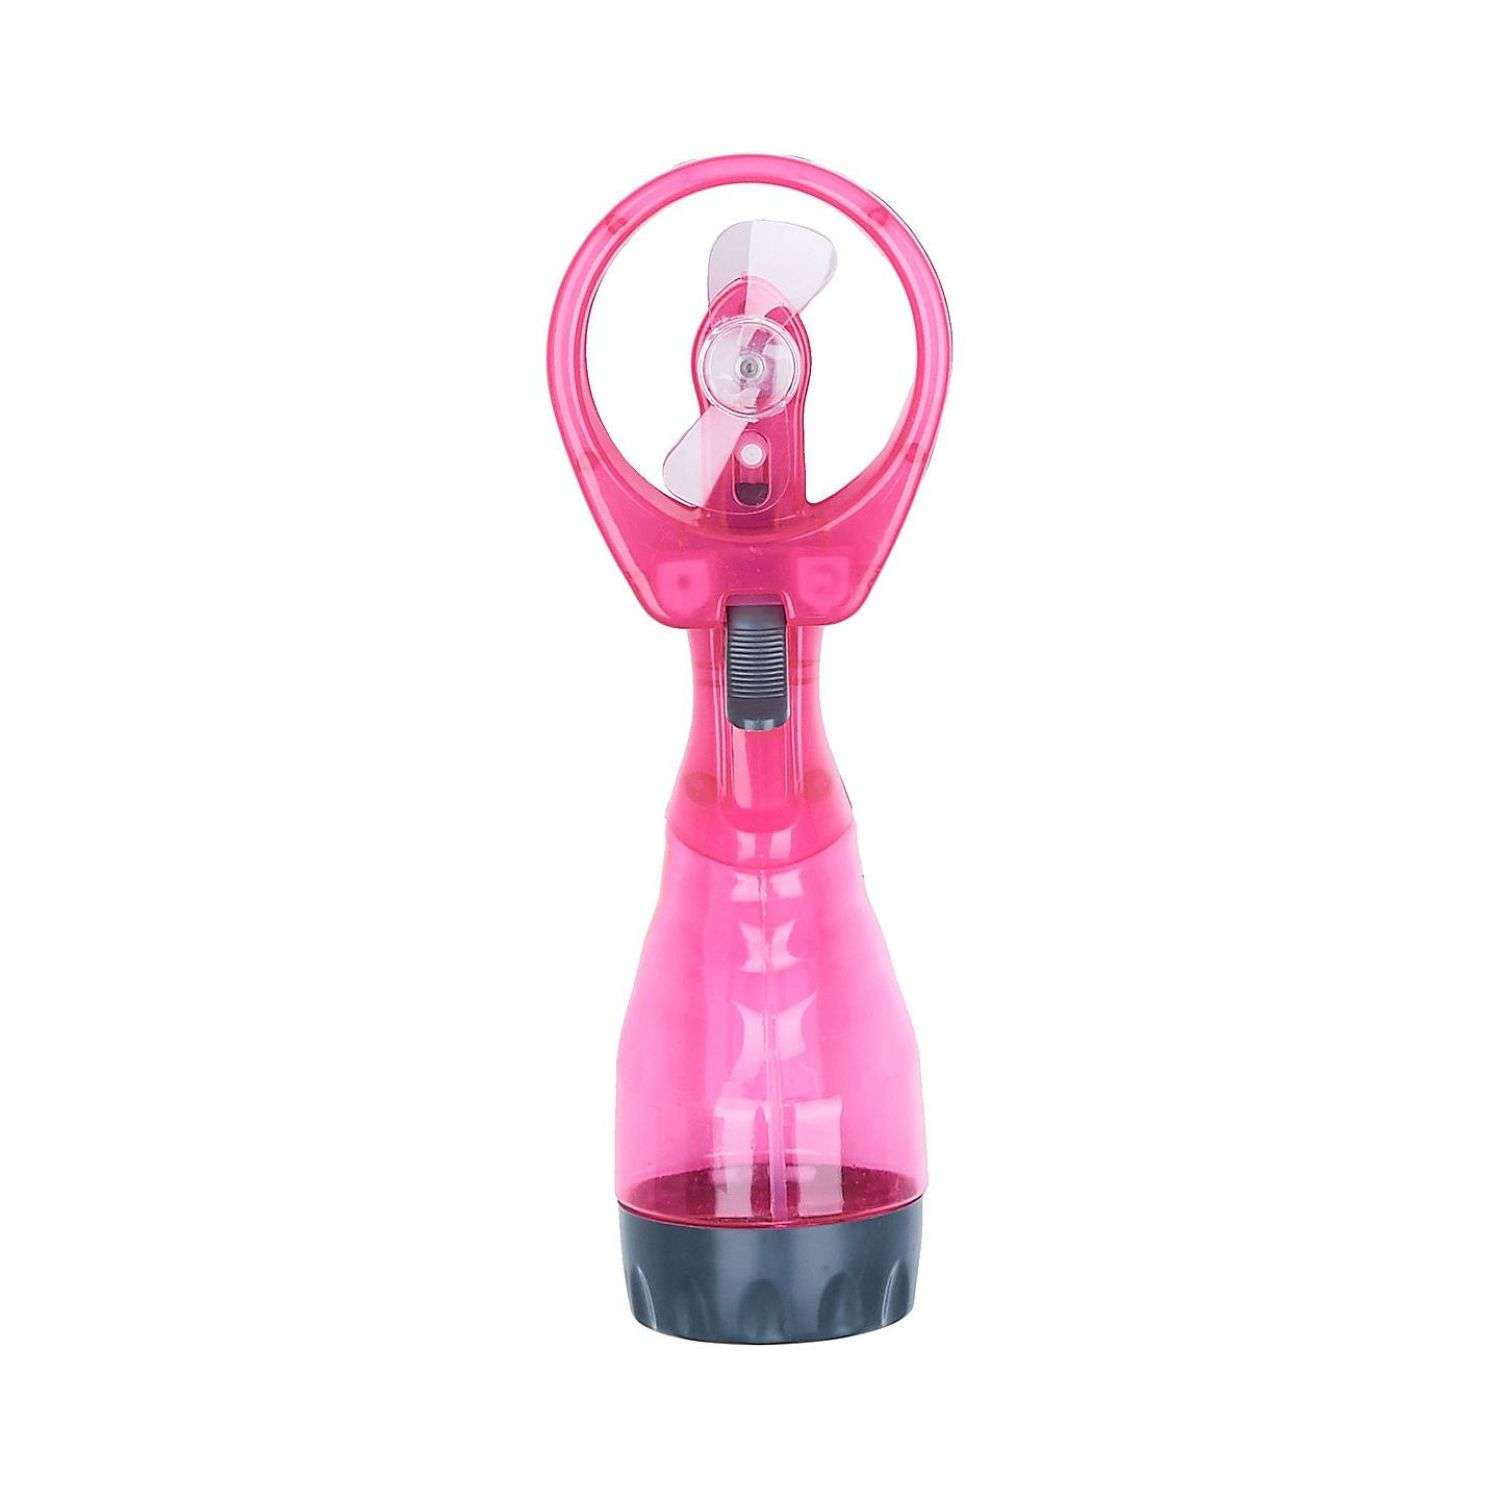 Вентилятор Seichi Портативный ручной с пульверизатором розовый - фото 1